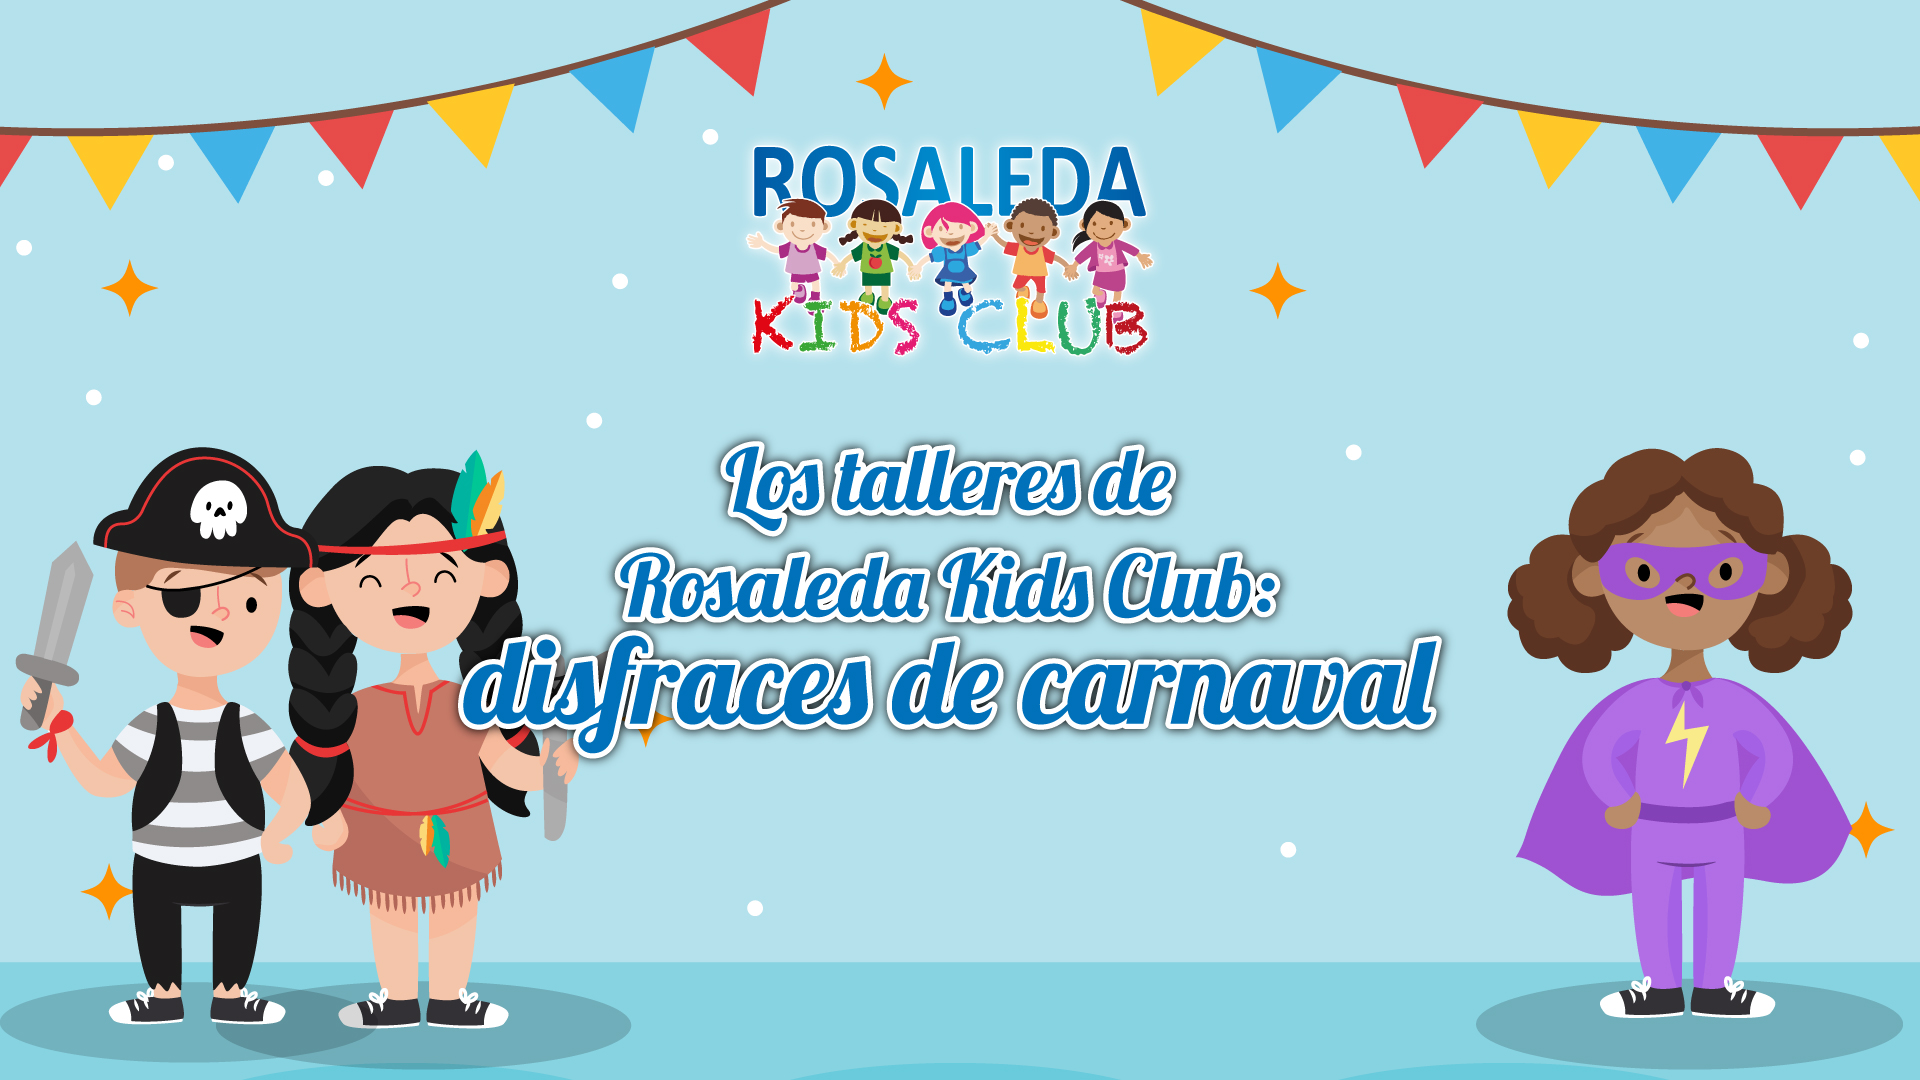 Las talleres de Rosaleda Kids Club: disfraces de Carnaval